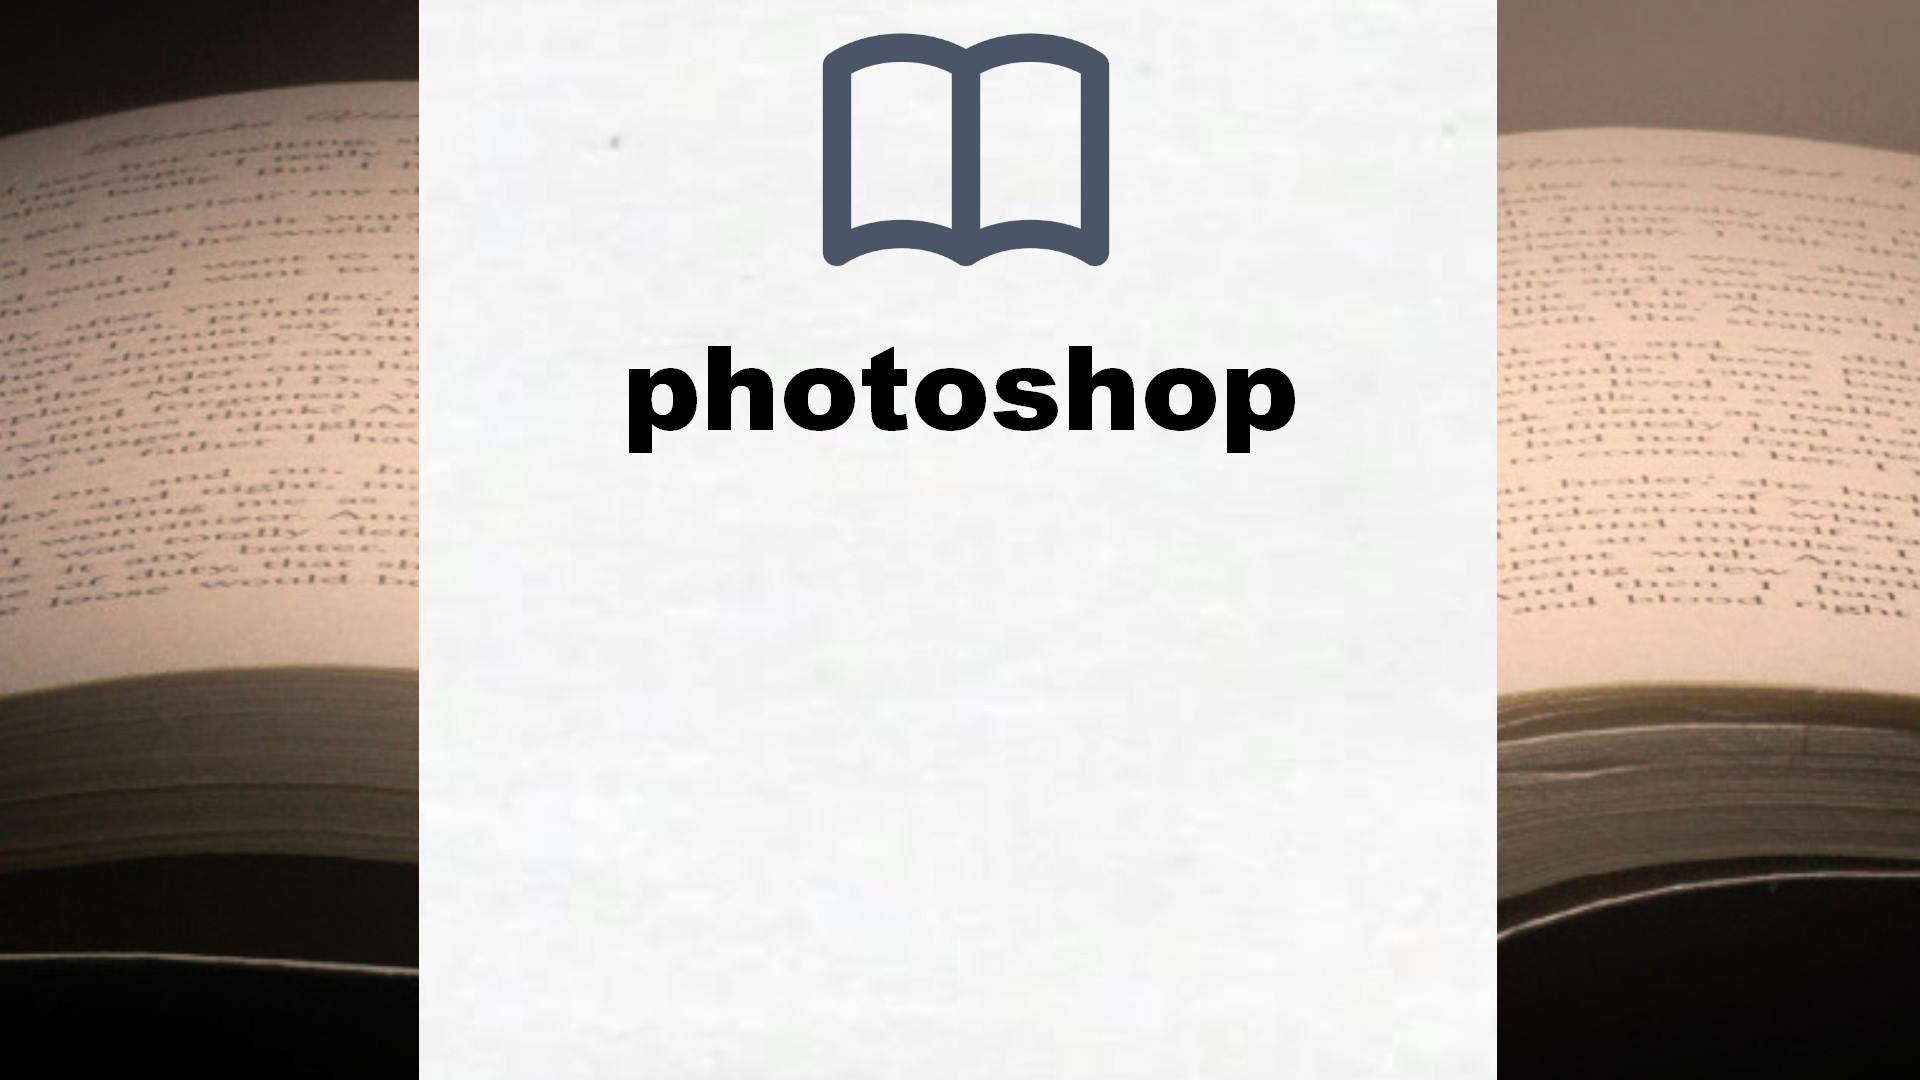 Libros sobre photoshop